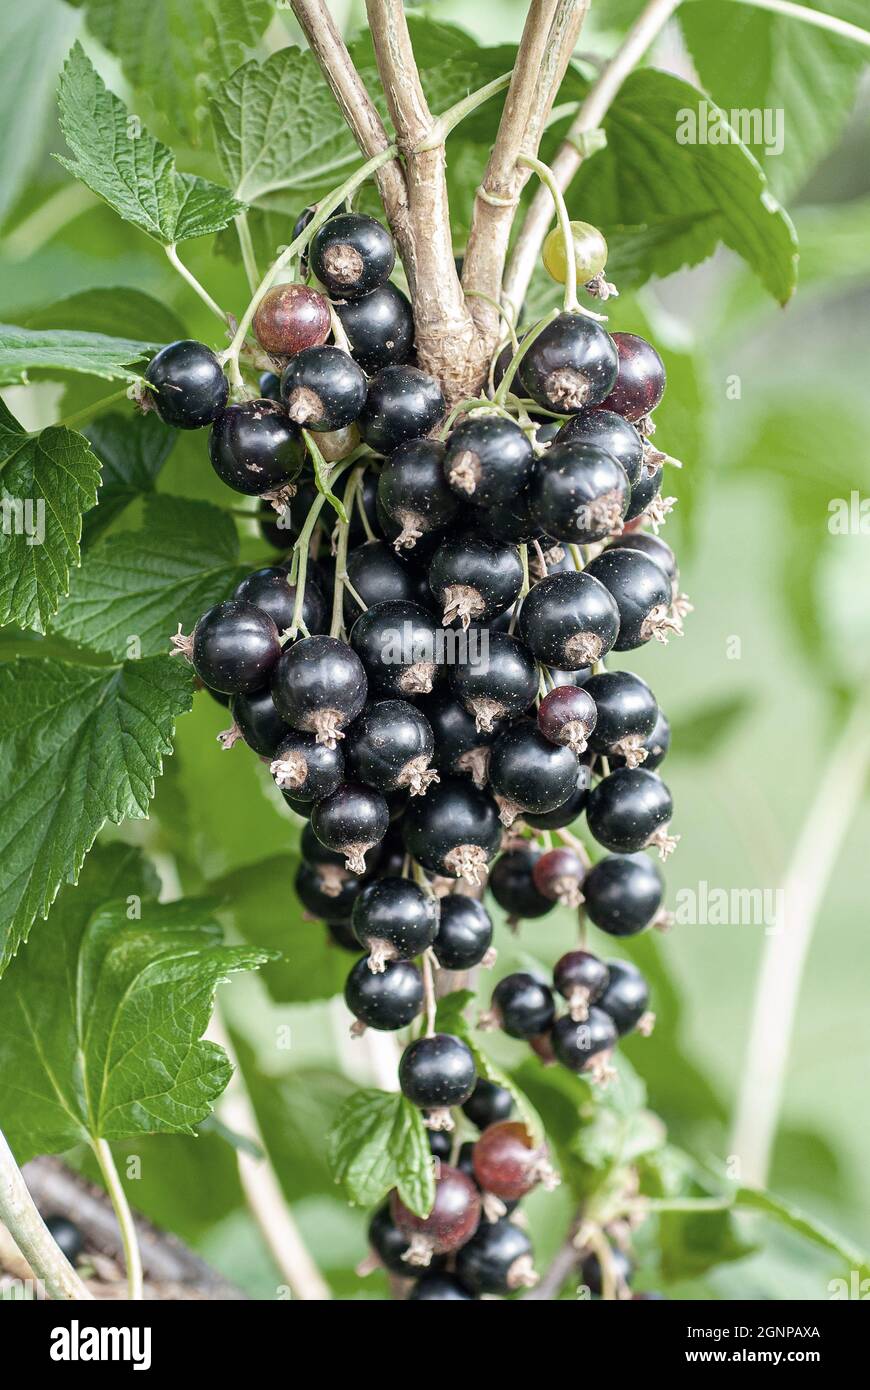 Europäische schwarze Johannisbeere (Ribes nigrum 'Titania', Ribes nigrum Titania), schwarze Johannisbeeren auf einem Strauch, Sorte Titania Stockfoto